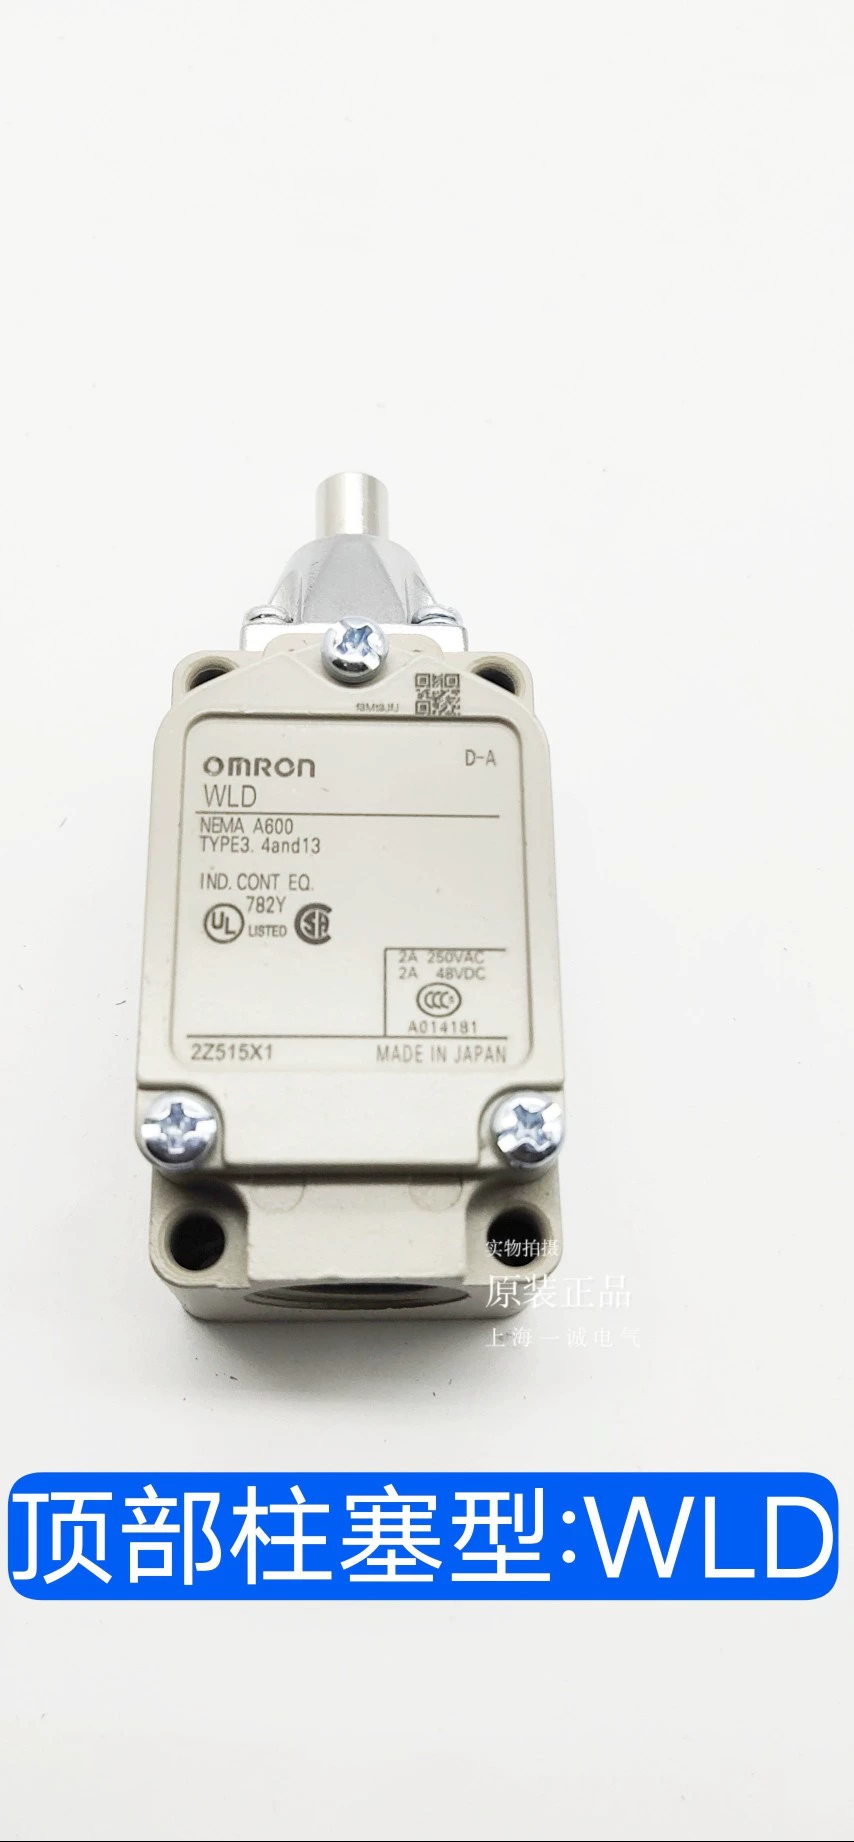 Công tắc hành trình OMRON công tắc hành trình kiểu nút nhấn mạch thuận nghịch dụng công tắc hành trình Công tắc hành trình